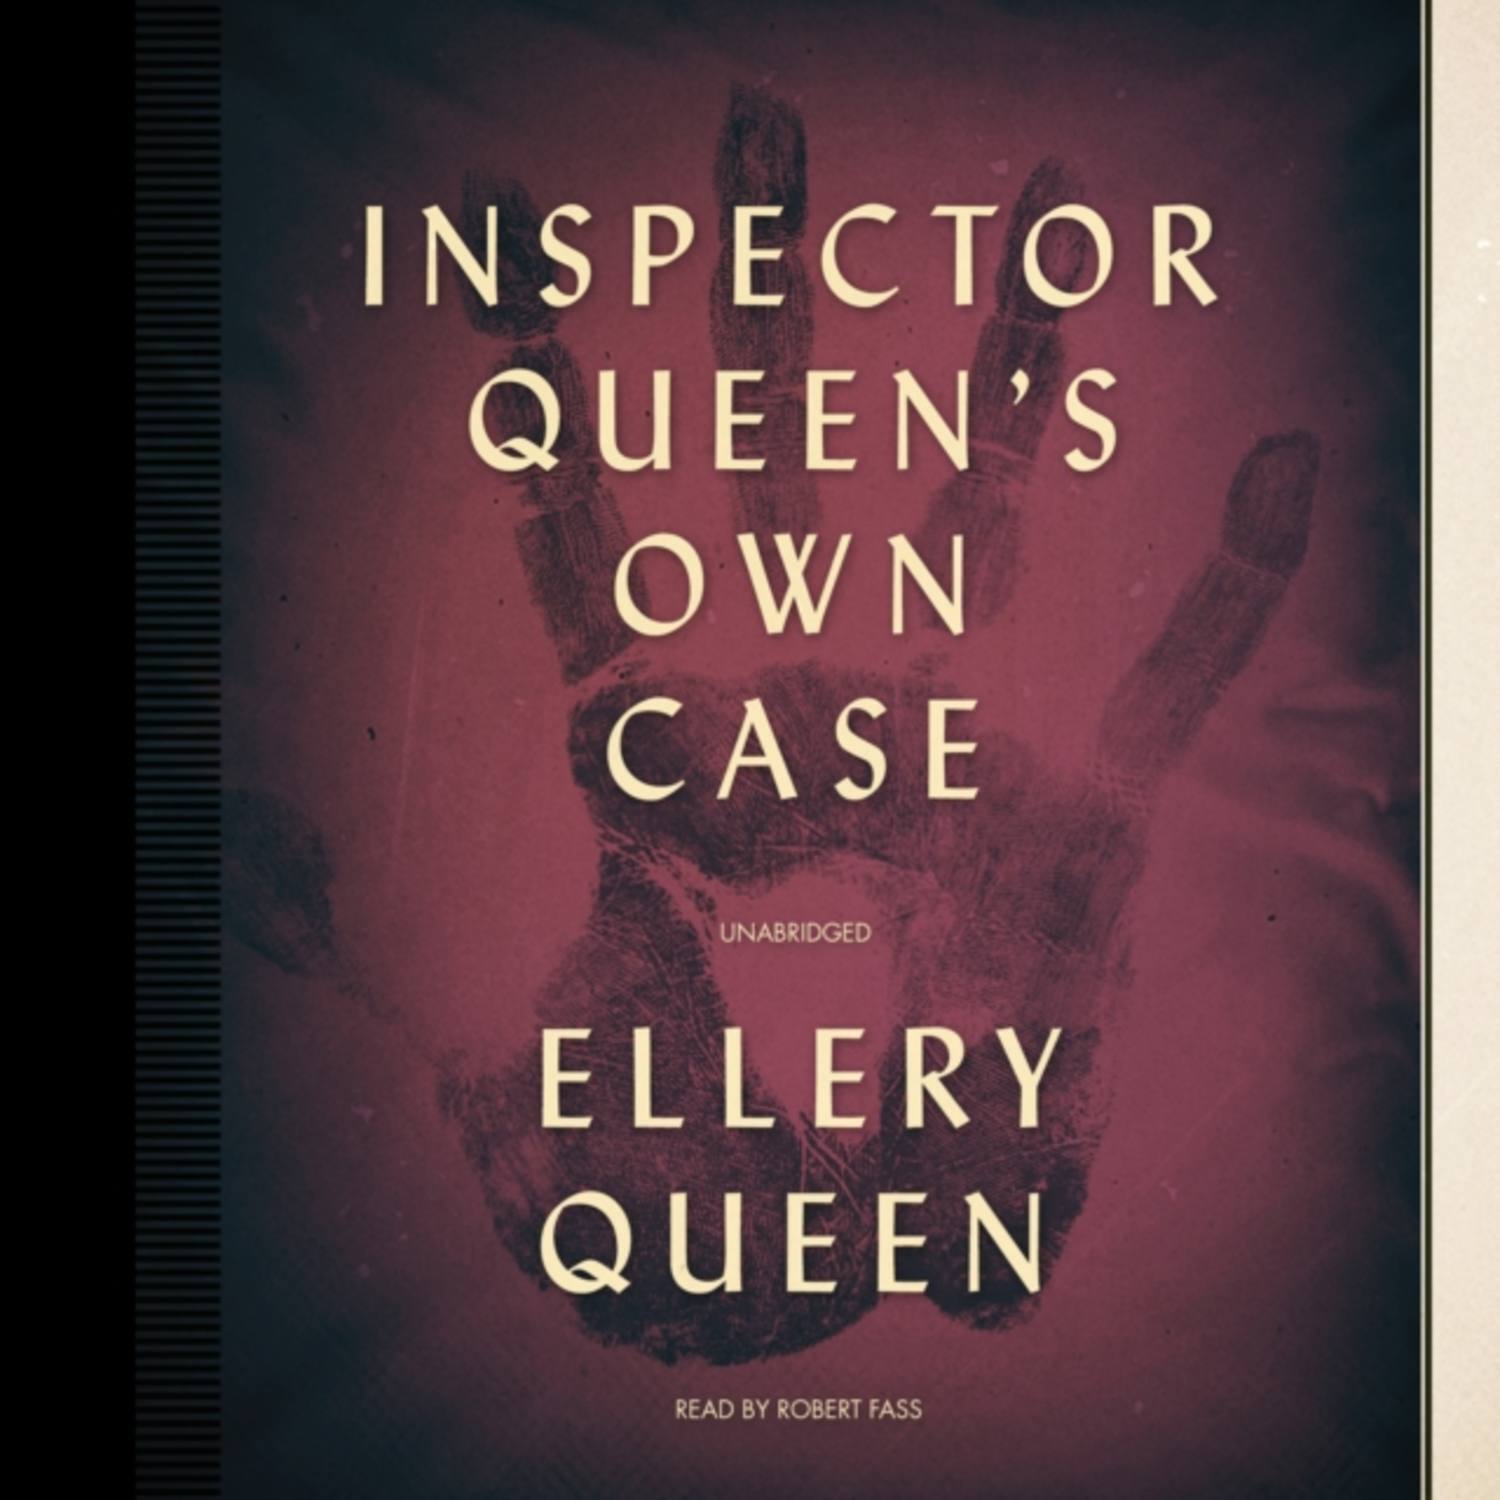 Ellery Queen books. Queen be read